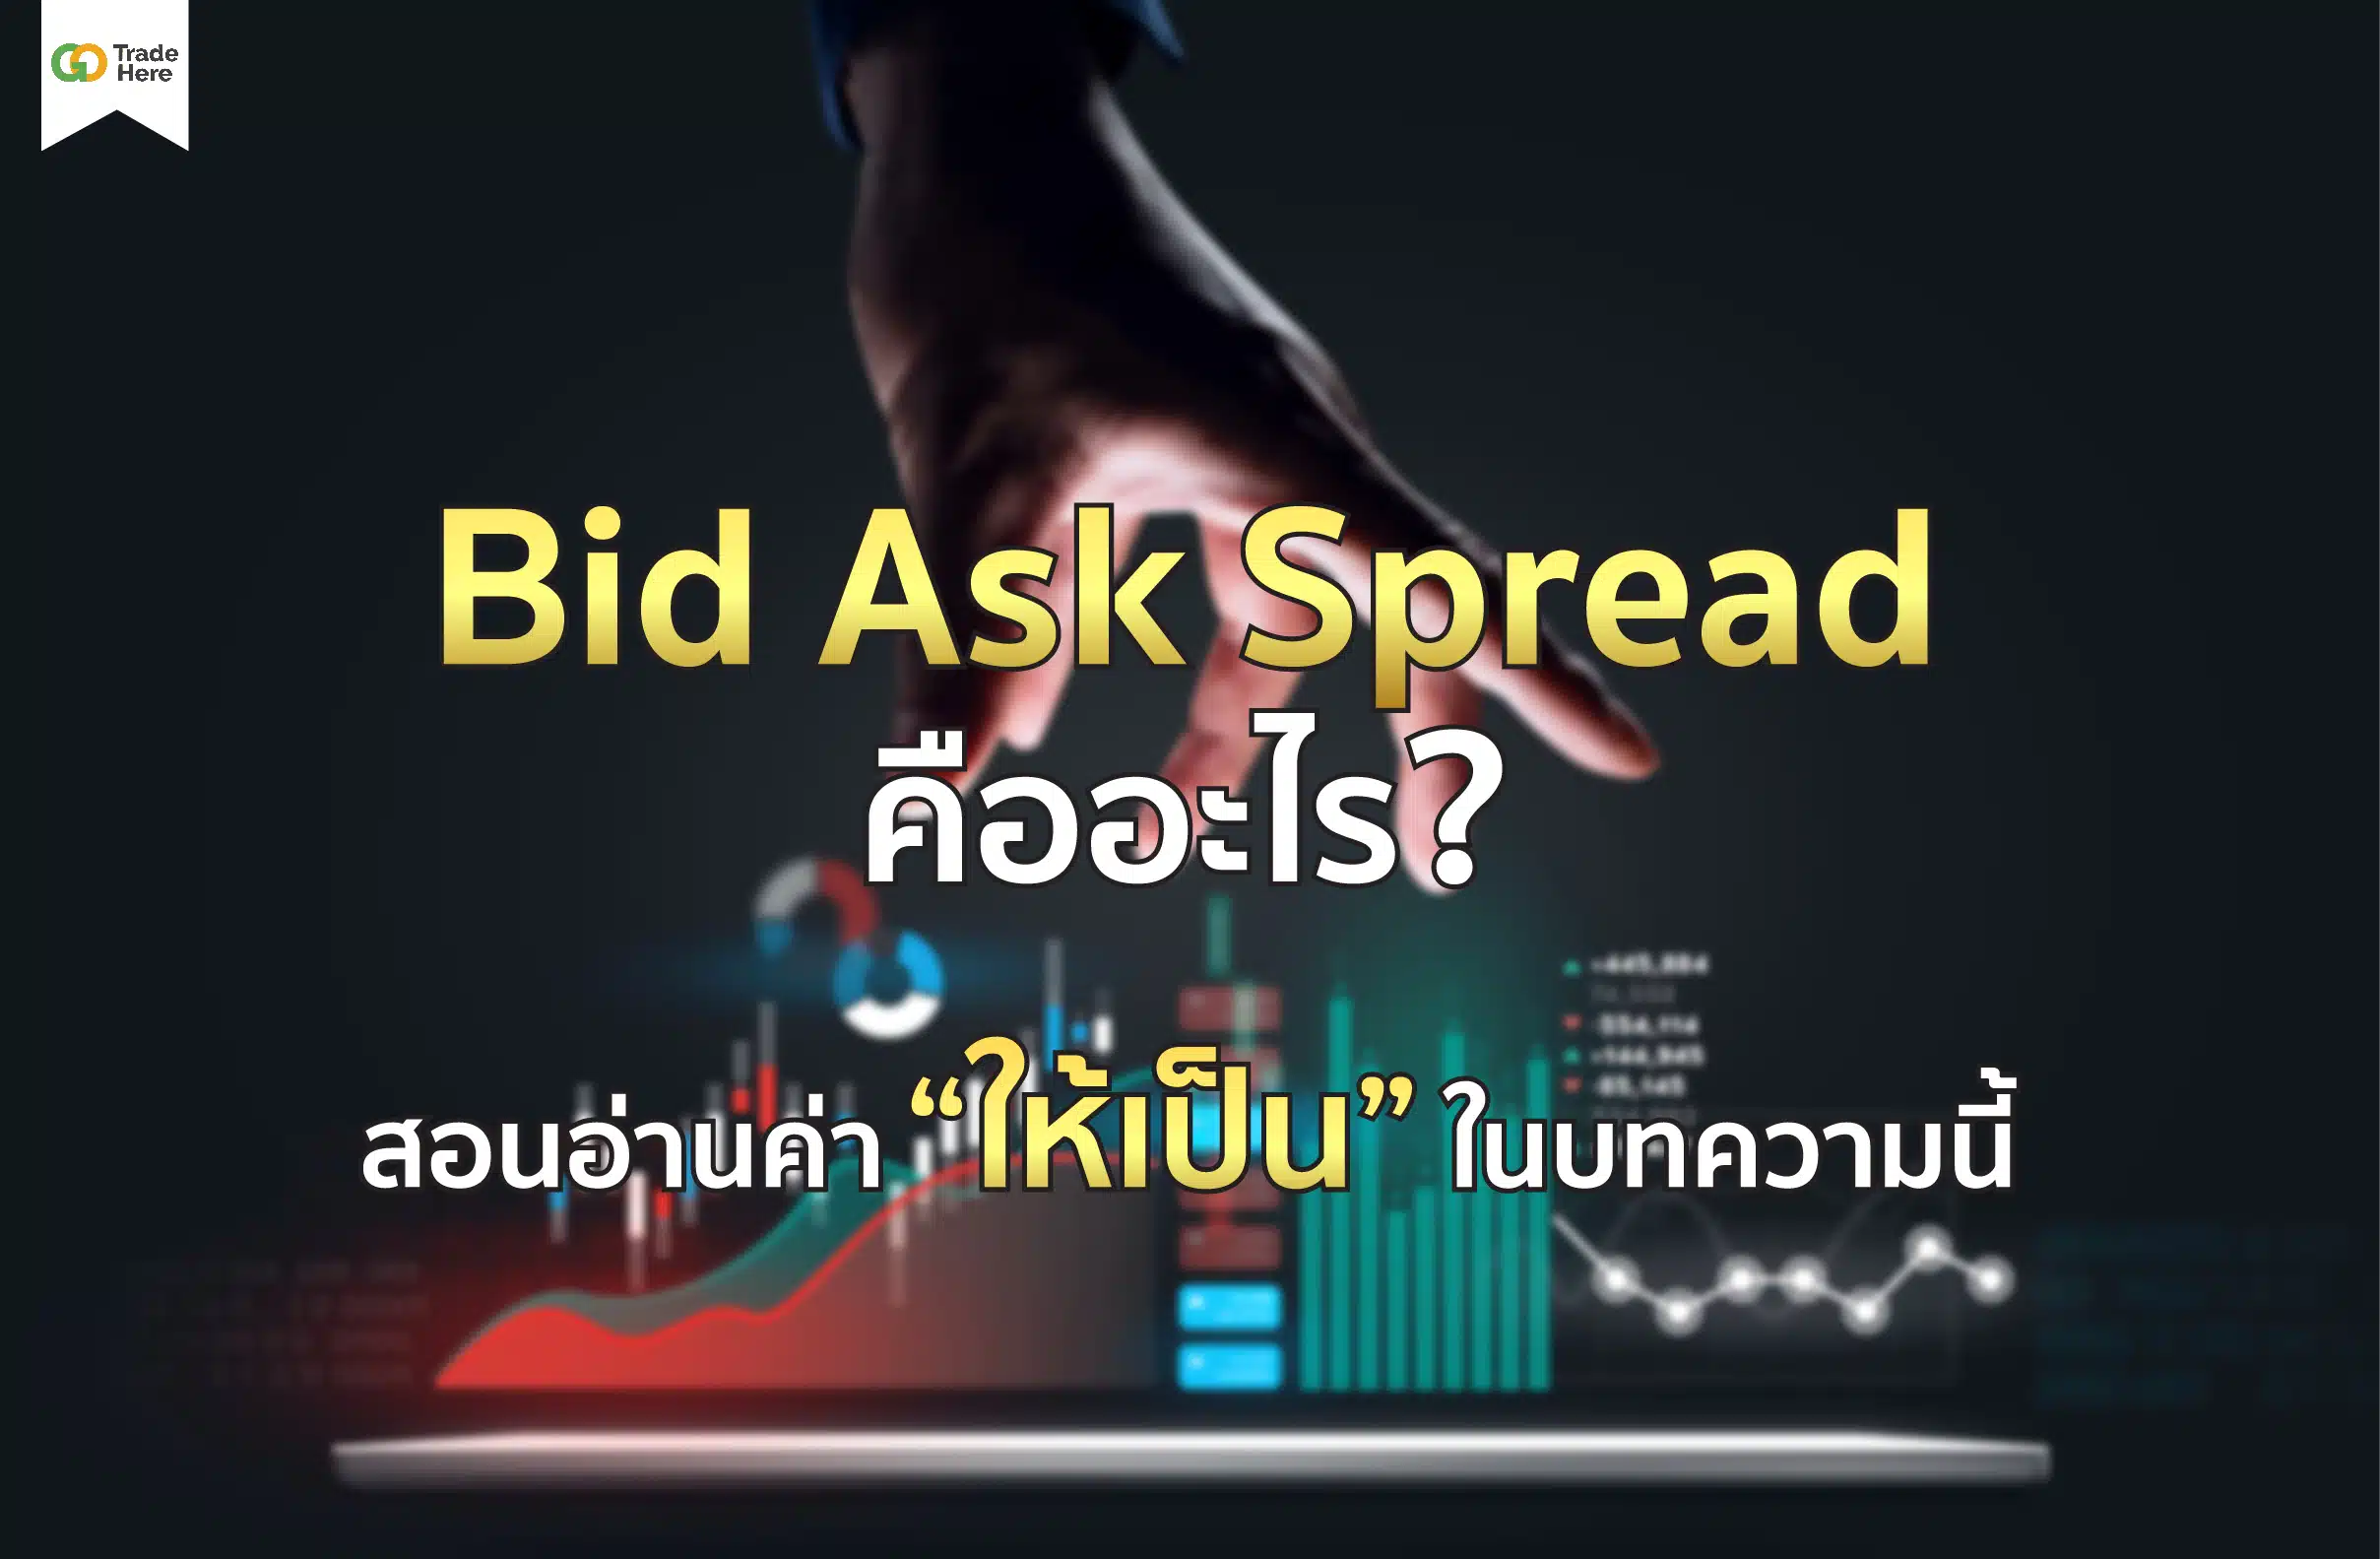 Bid Ask Spread